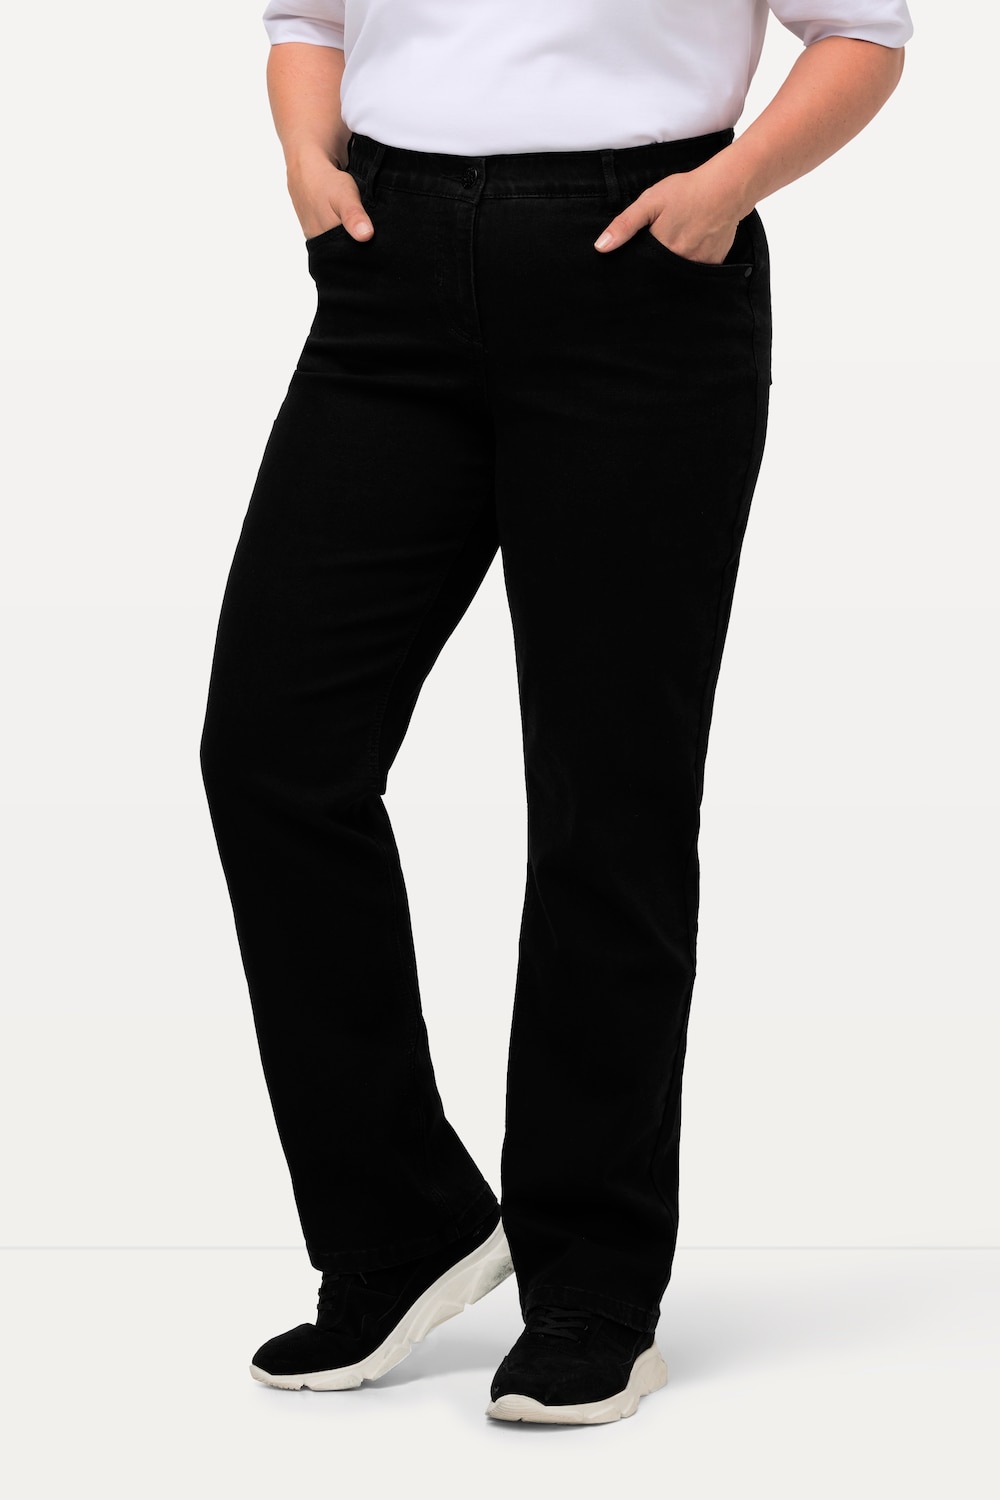 Grote Maten jeans Mandy, Dames, zwart, Maat: 42, Katoen/Polyester/Viscose, Ulla Popken